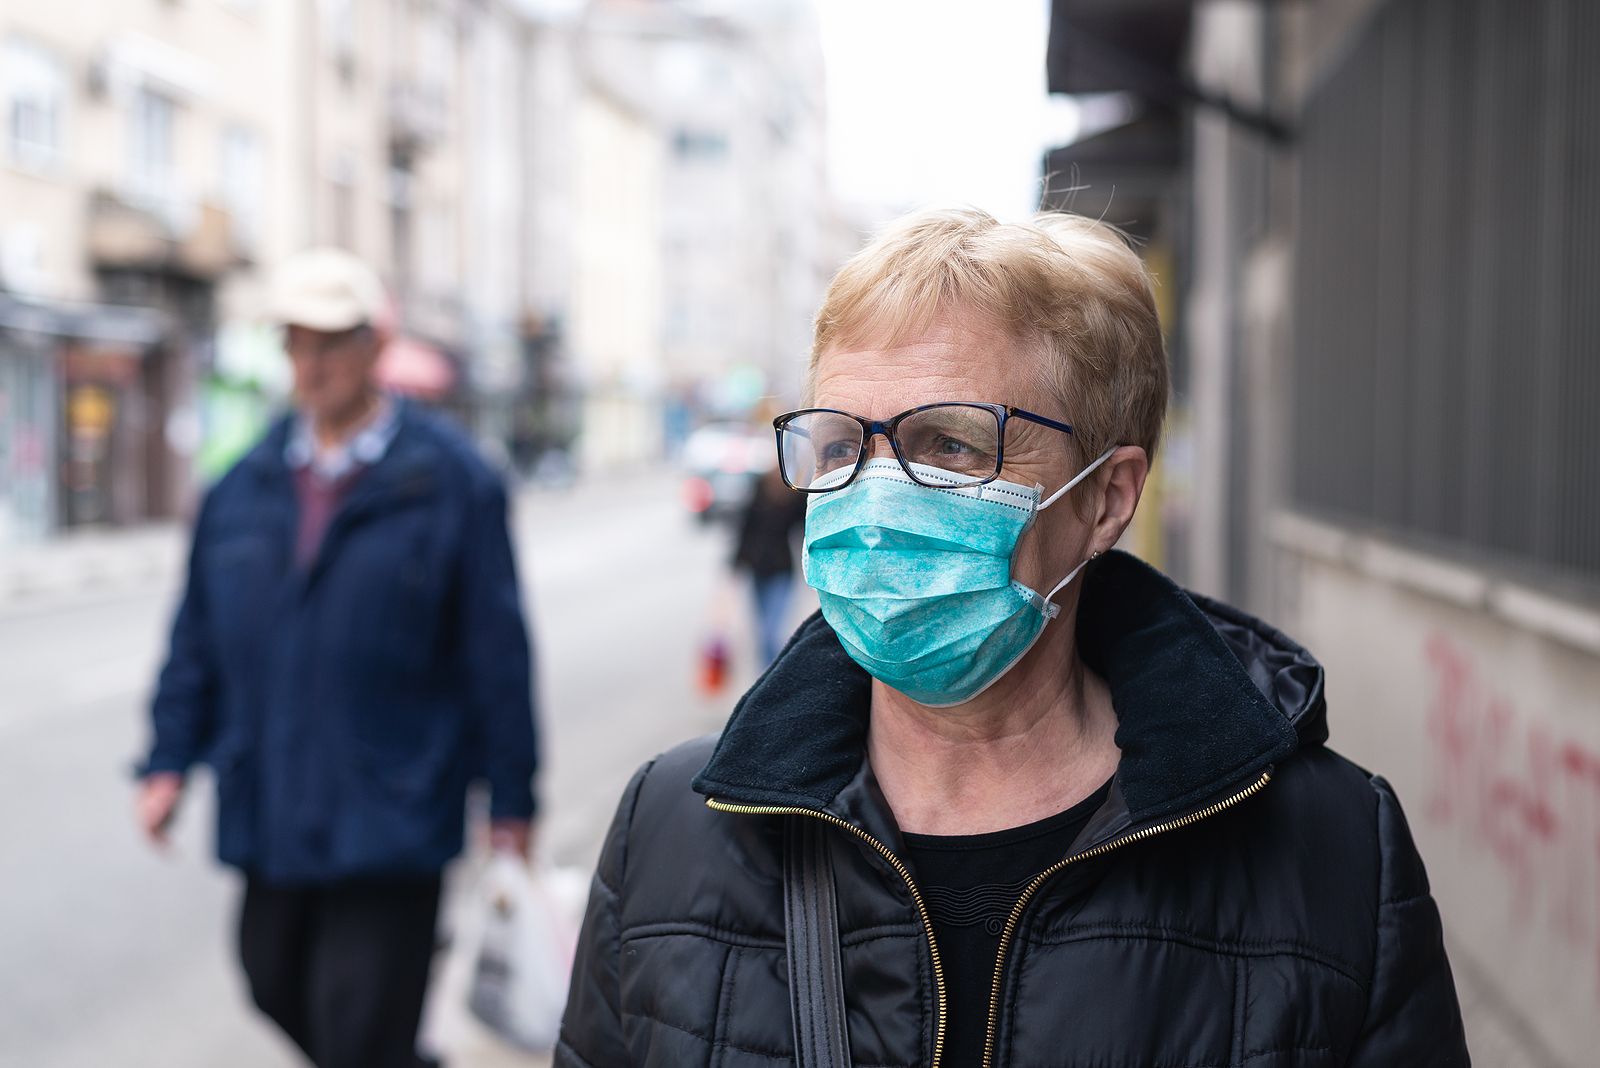 Las personas con enfermedades respiratorias deberían llevar mascarilla, según los neumólogos